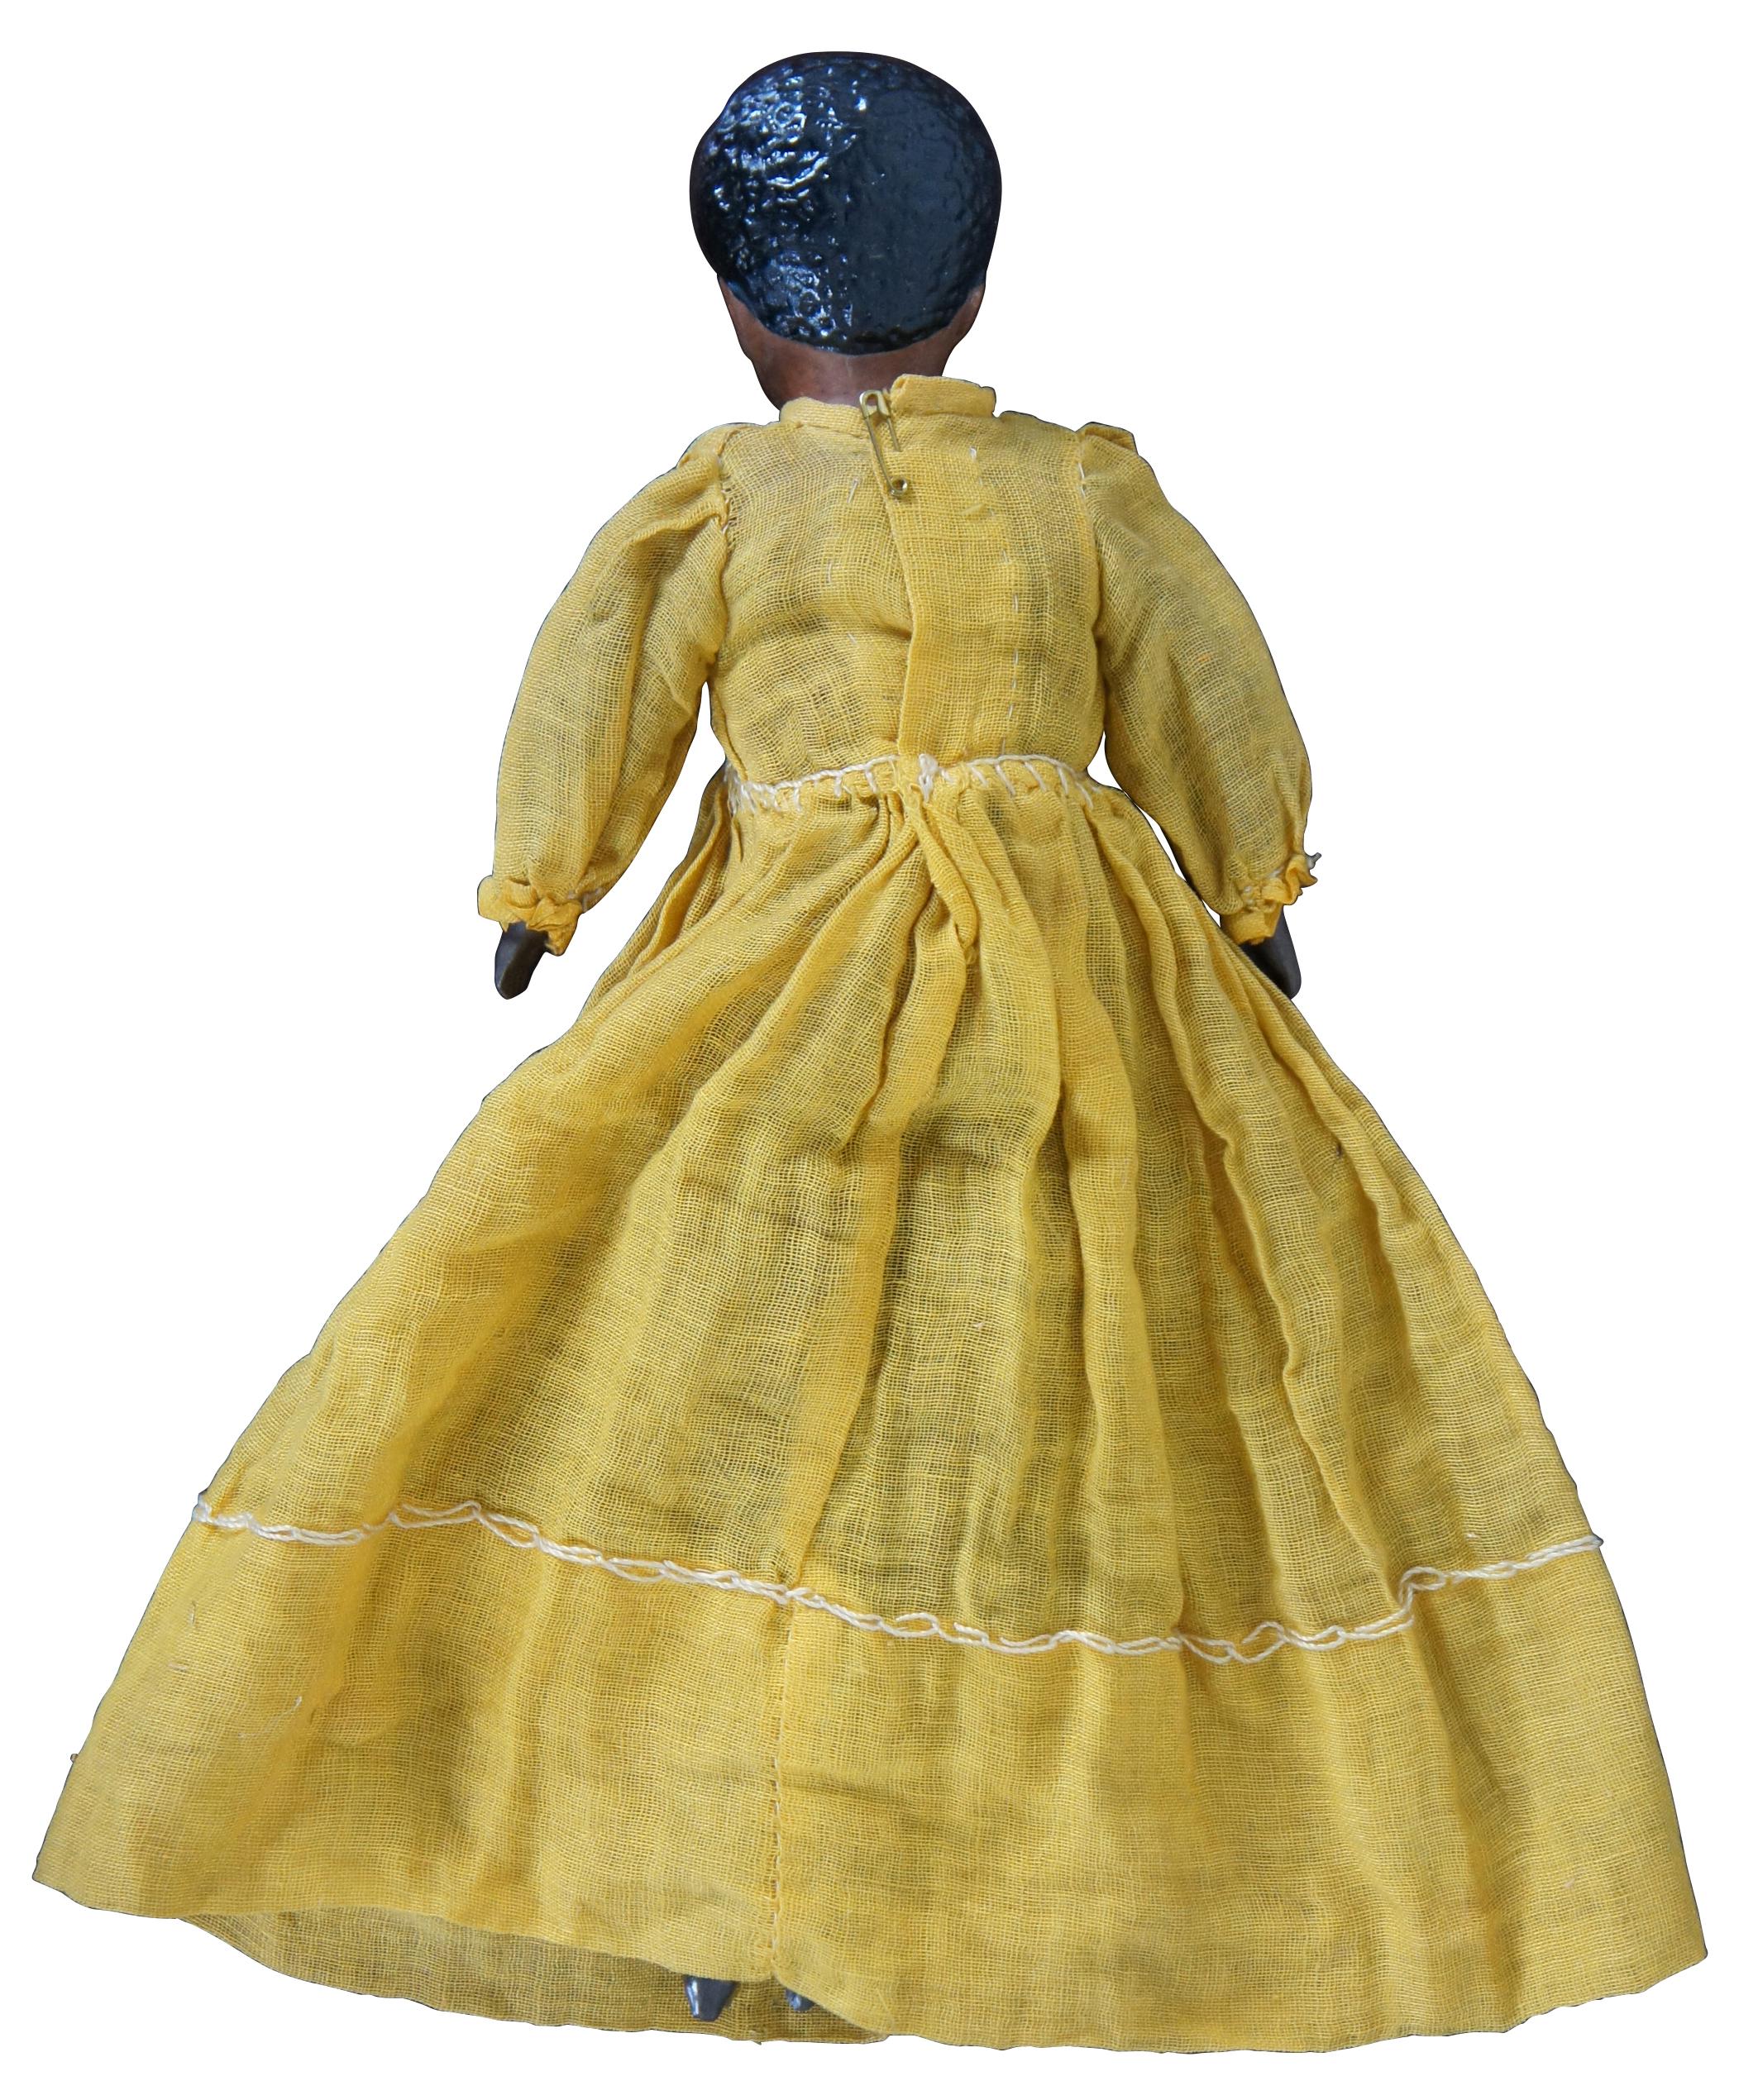 Unique poupée afro-américaine (peut-être mulâtre ?) du 19e siècle avec tête et mains en biscuit, bottes moulées et cheveux coupés, et corps en tissu habillé d'une robe jaune.